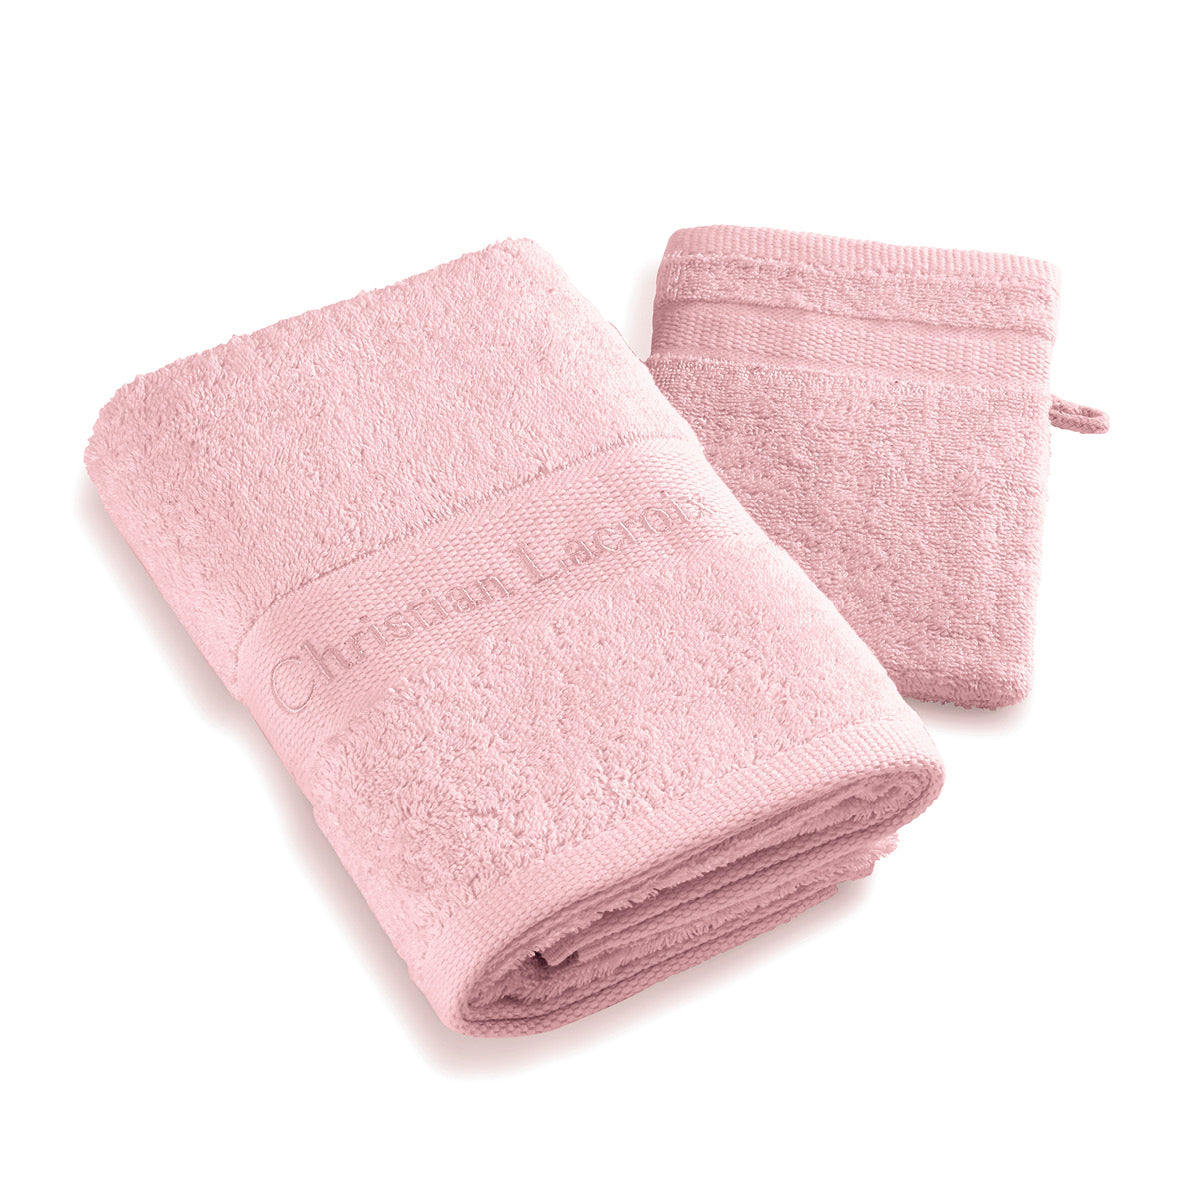 Hand towel + washcloth - 50 x 100 cm / 15 x 21cm